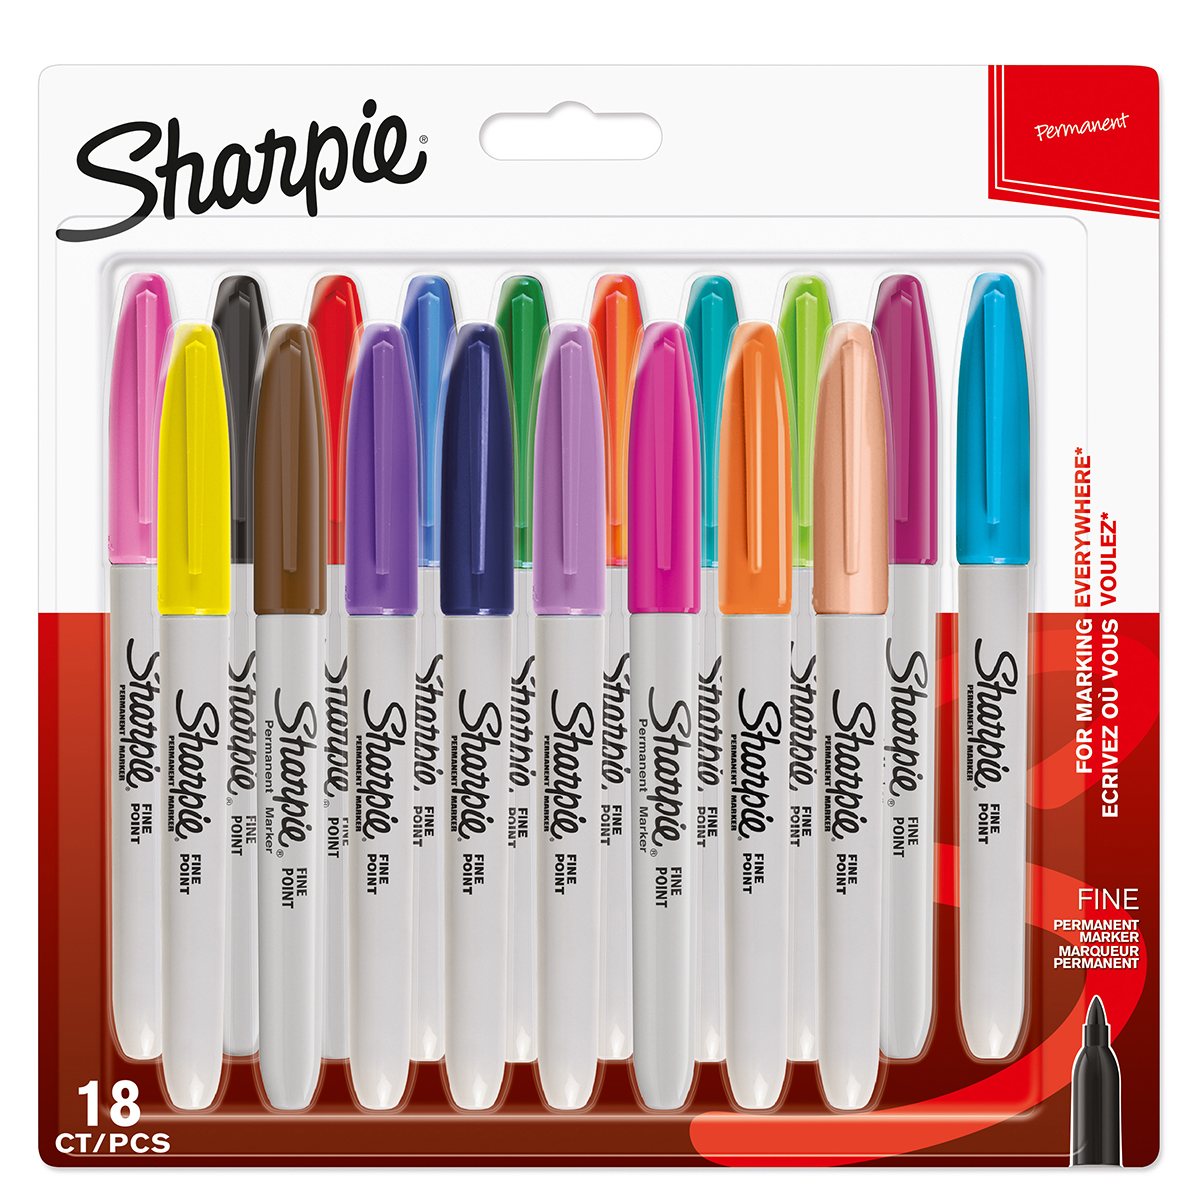 Sharpie Fine Marker Set of 18